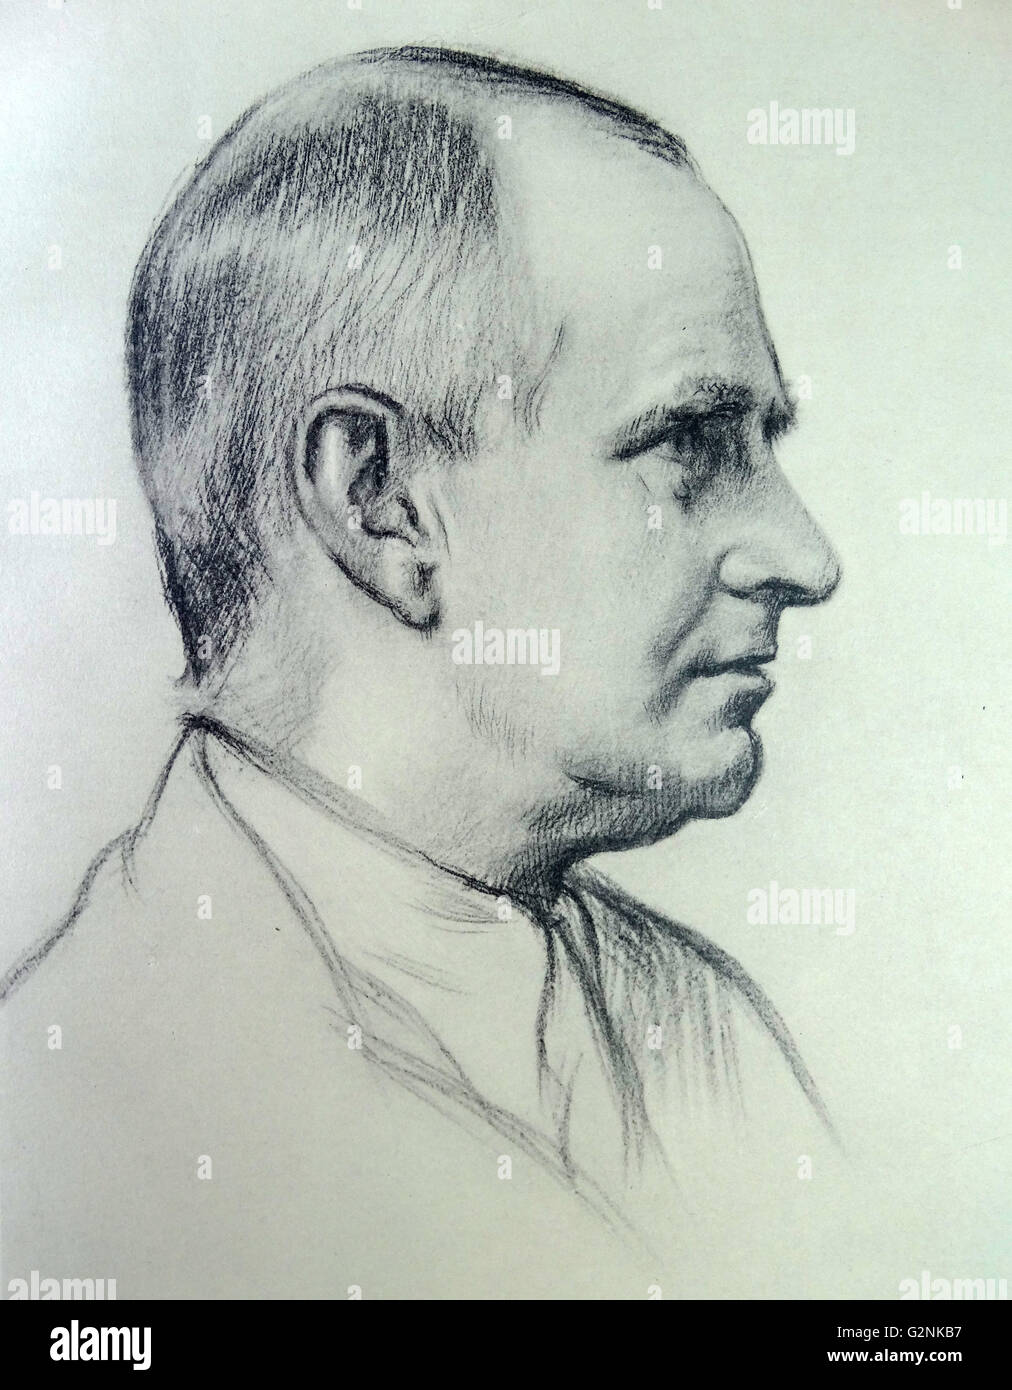 Ritratto del professore A.S. Eddington da Sir William Rothenstein. Rothenstein (Groninga 1872 - De Steeg 1945) era un pittore inglese, printmaker e disegnatore. Foto Stock